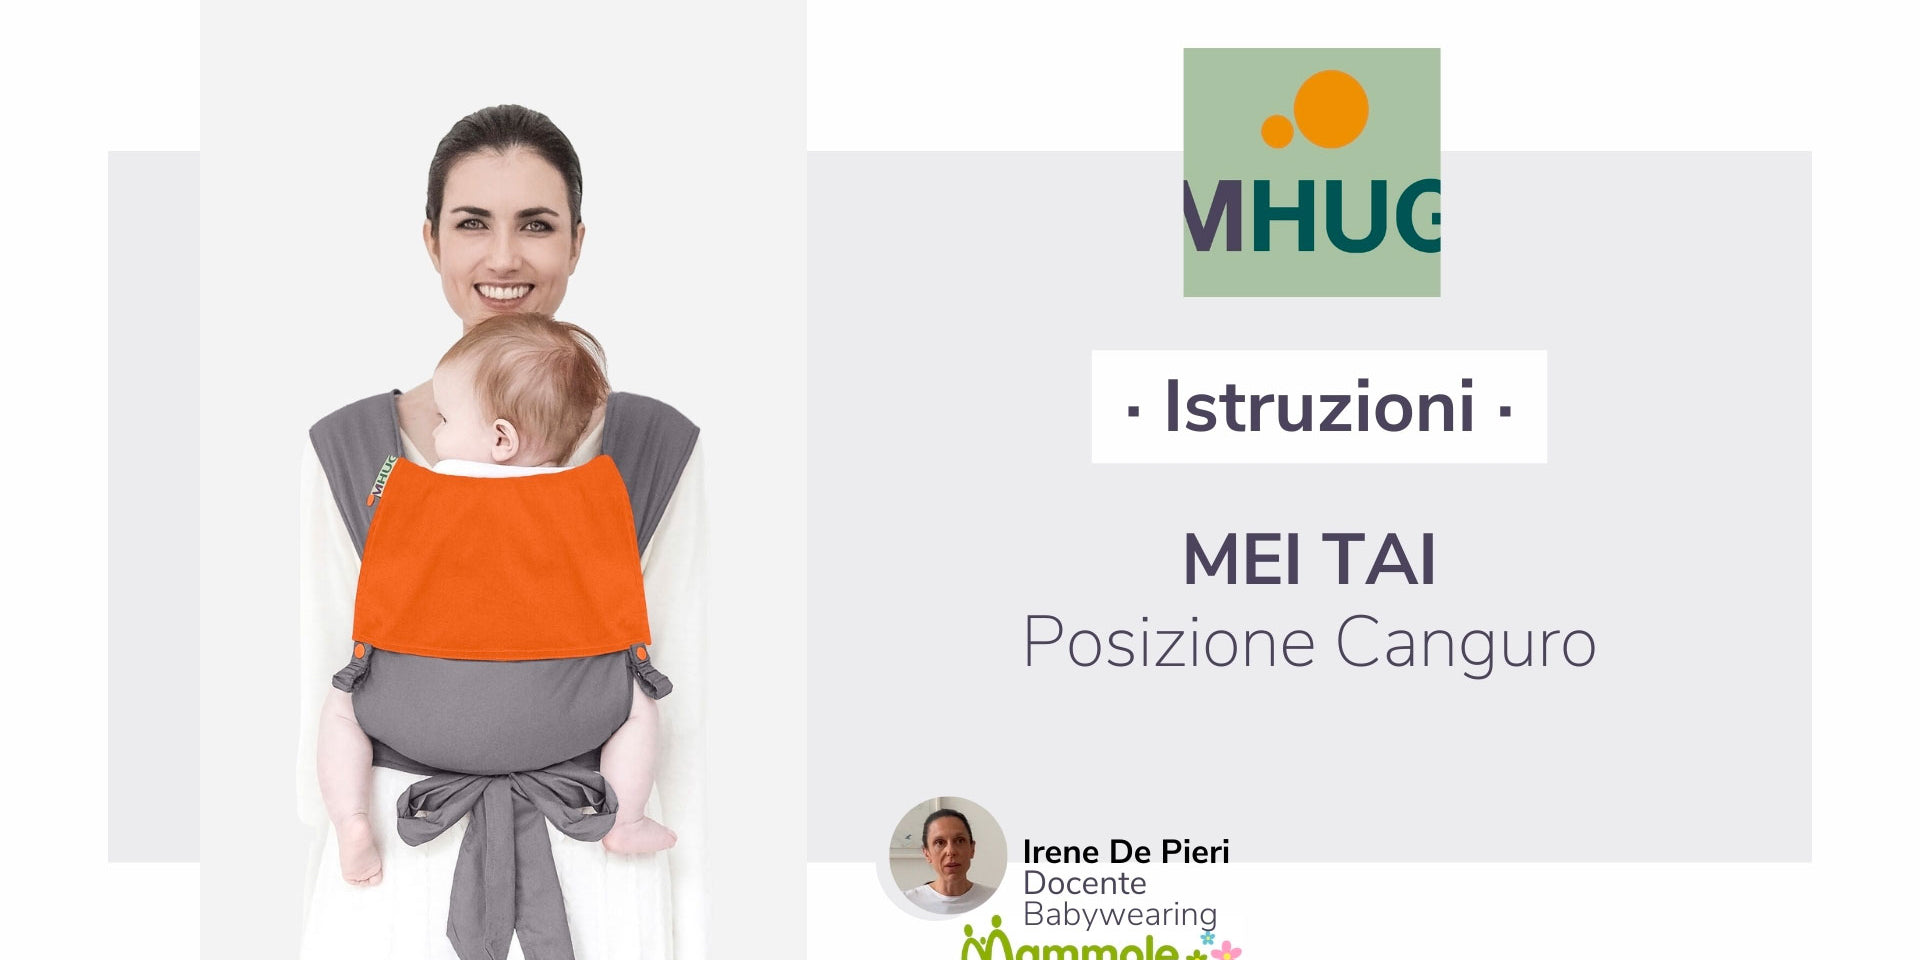 Video istruzioni di come indossare correttamente il Mei Tai di Mhug in posizione Canguro con la collaborazione di Irene de Pieri docente di Babywearing Mammole school